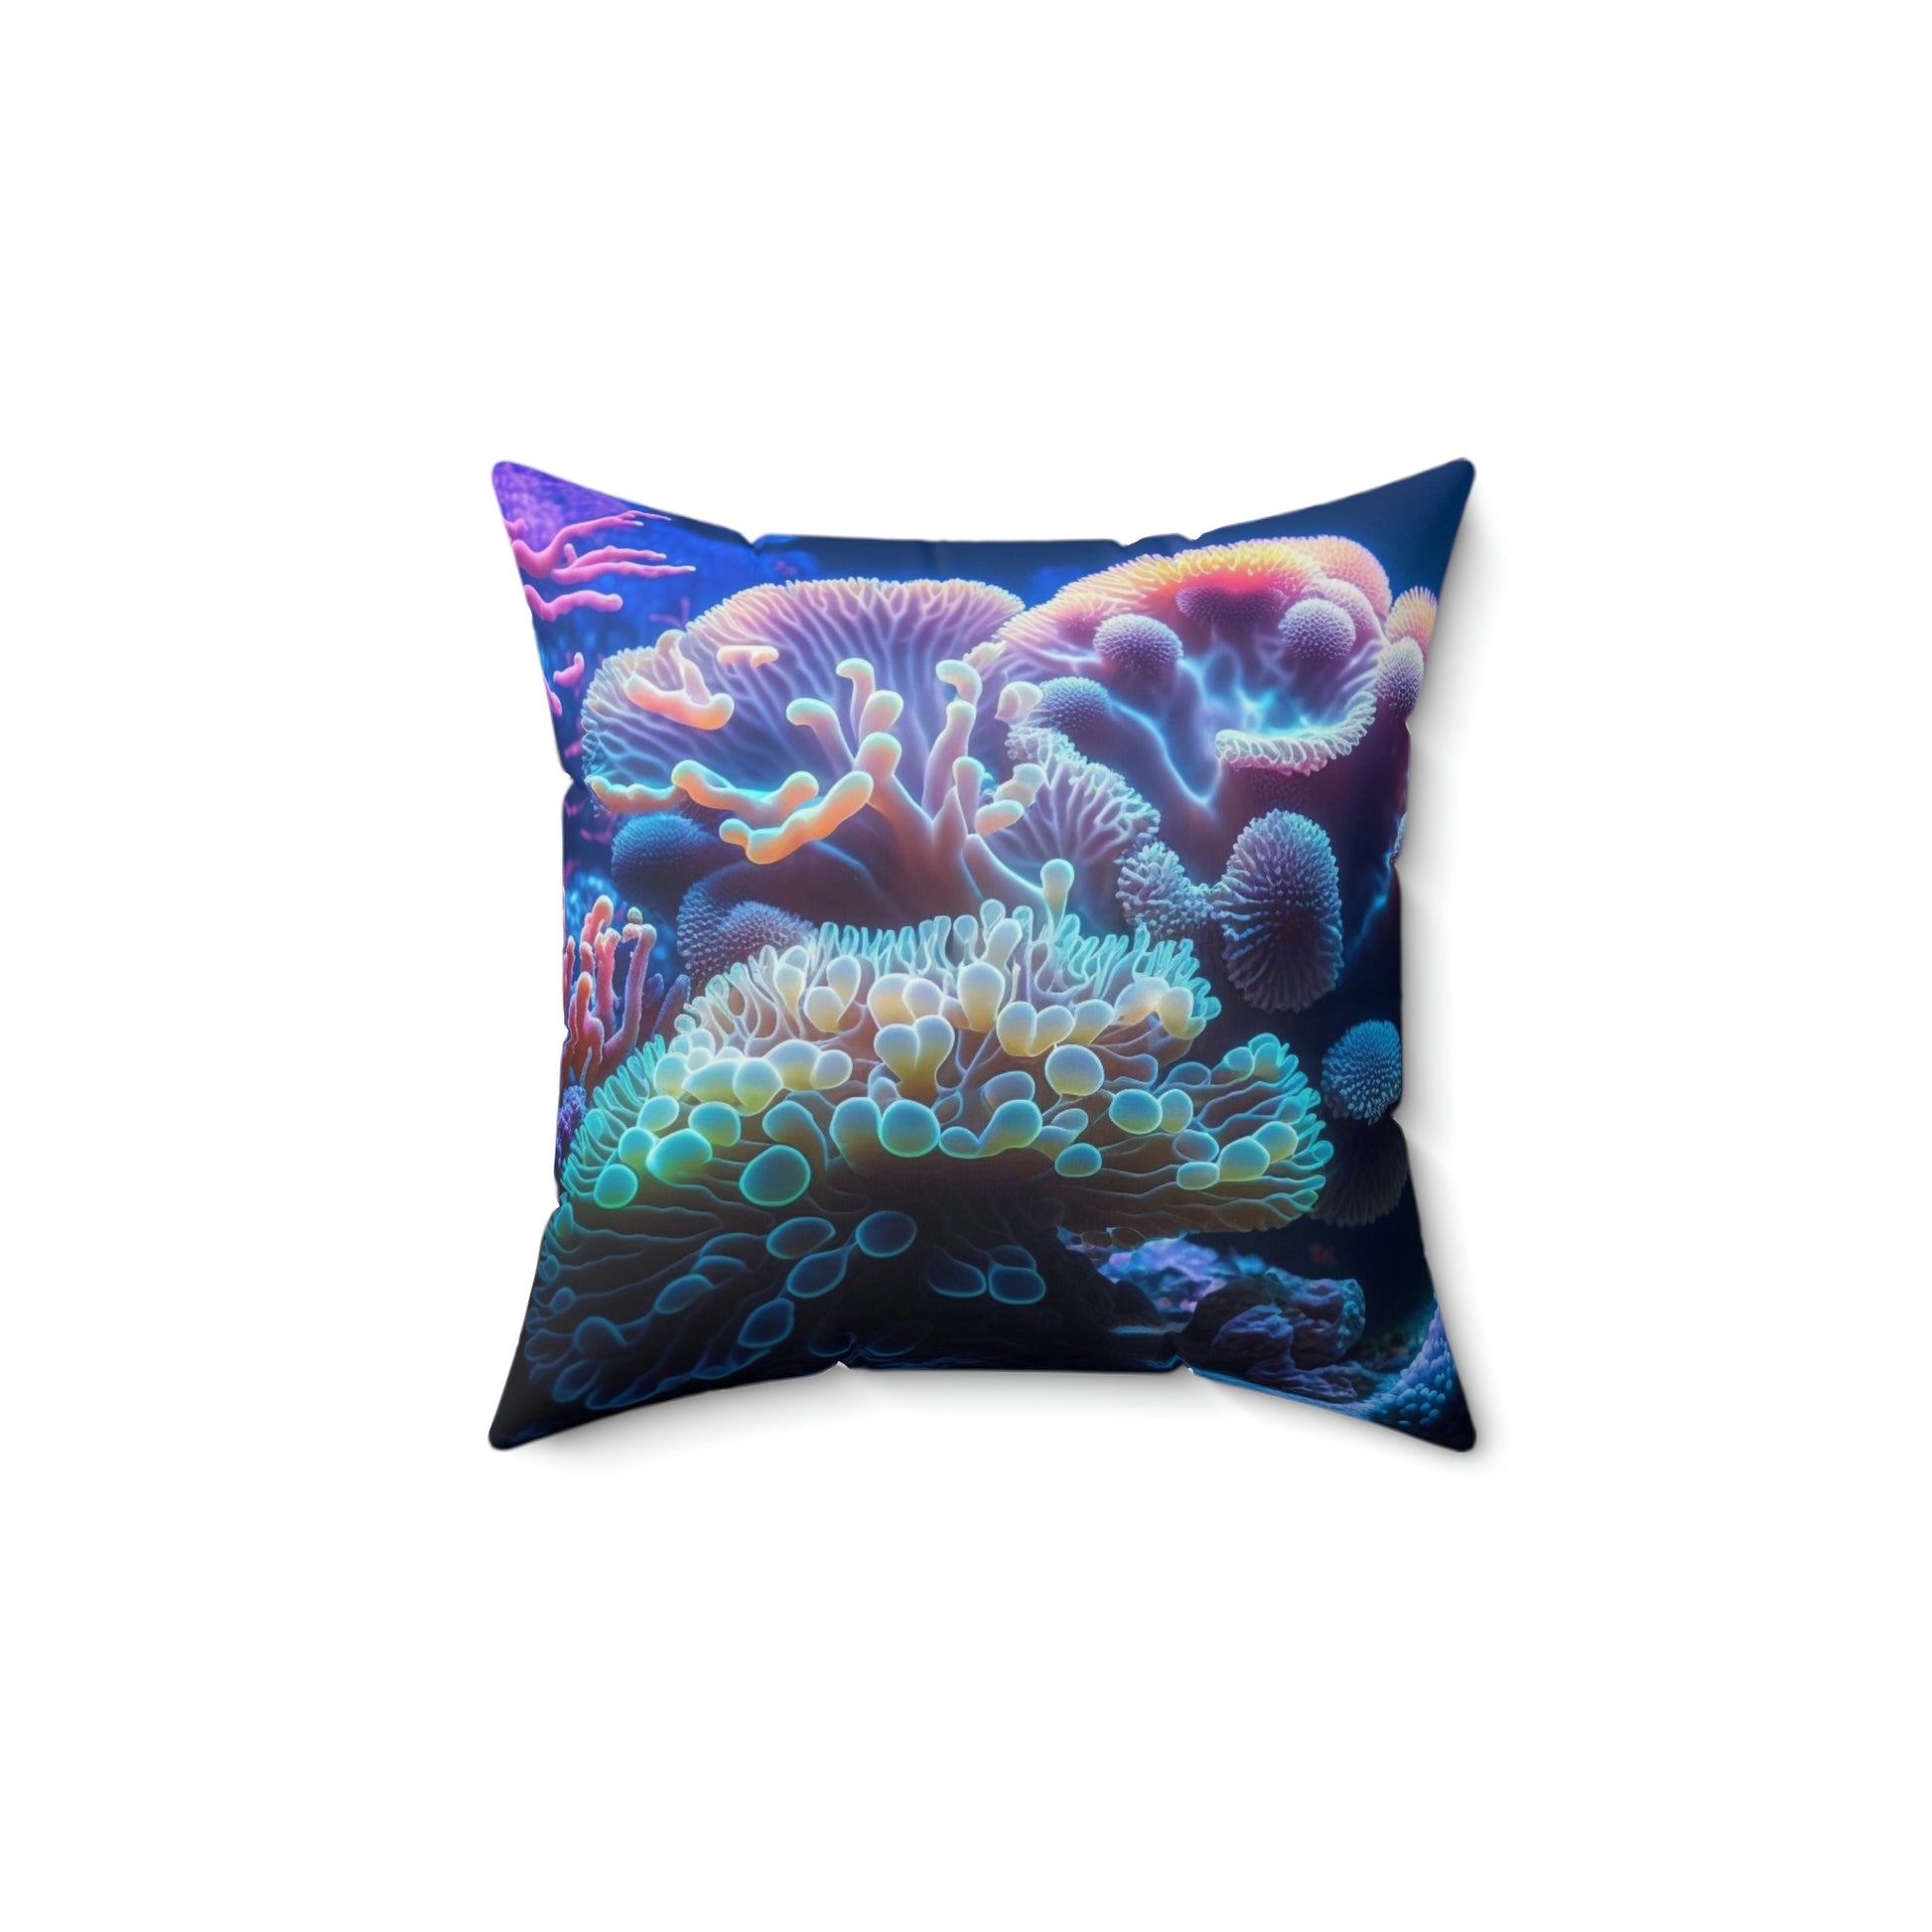 Deep Sea Kingdom Pillow - Reef of Clowns